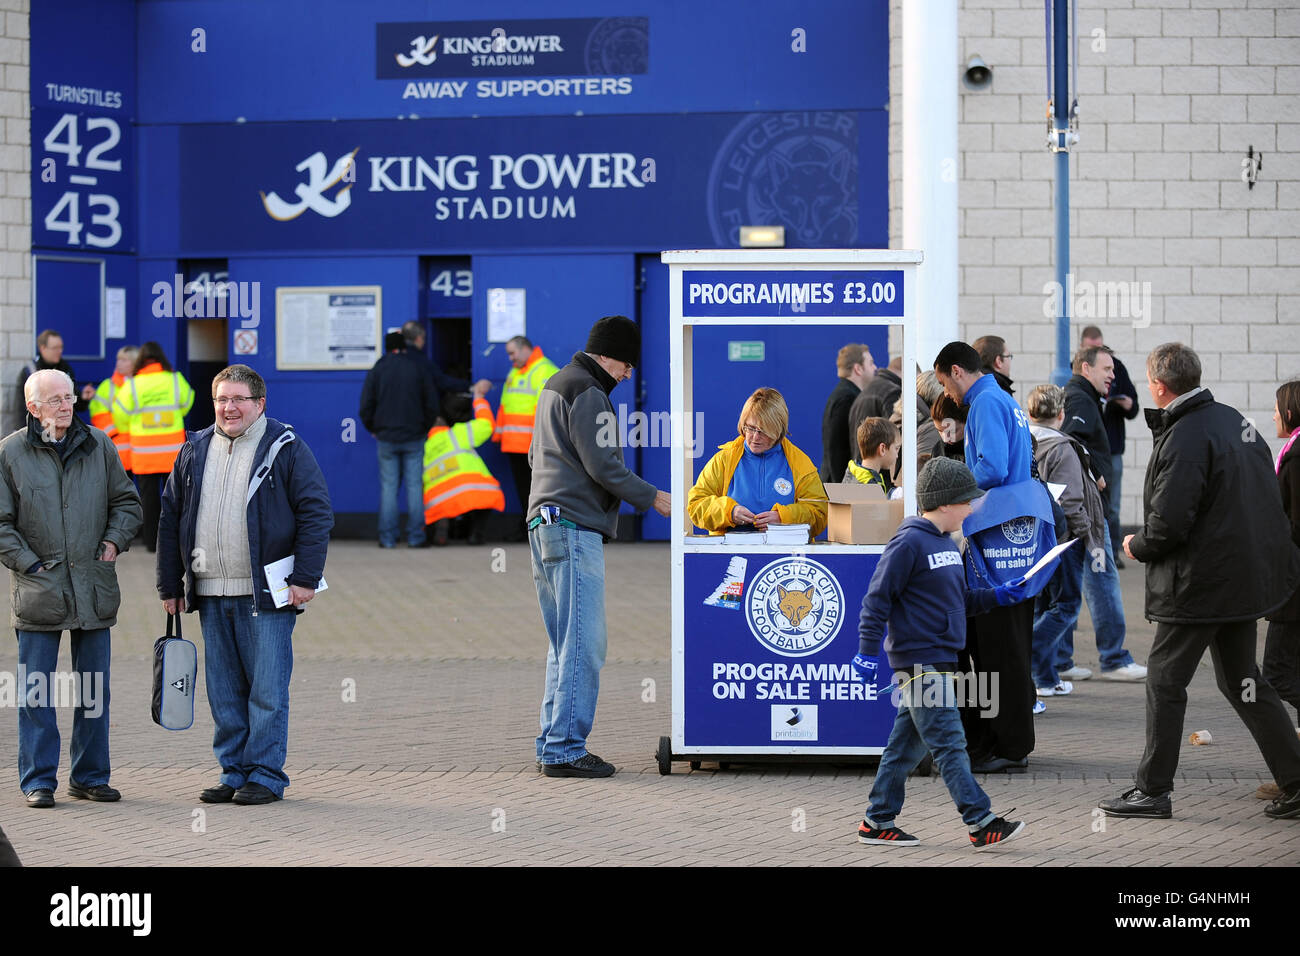 Les fans achètent des programmes d'allumette à l'extérieur du King Power Stadium avant le match. Banque D'Images